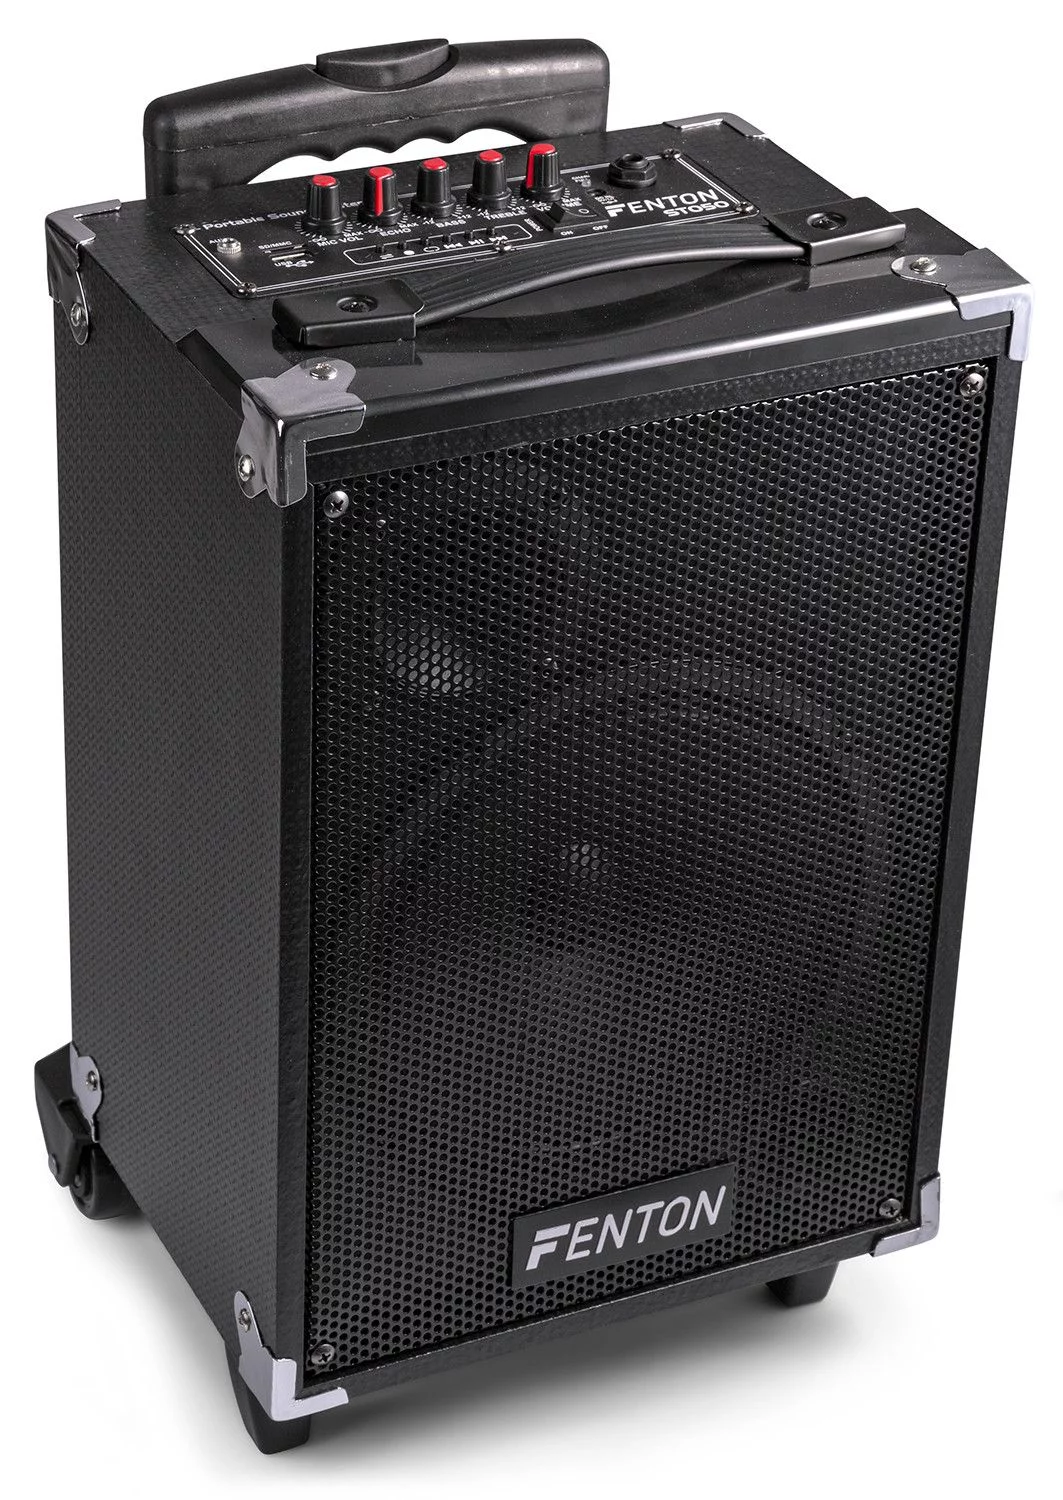 Fenton st050 mobiele geluidsinstallatie met bluetooth en draadloze vhf 2